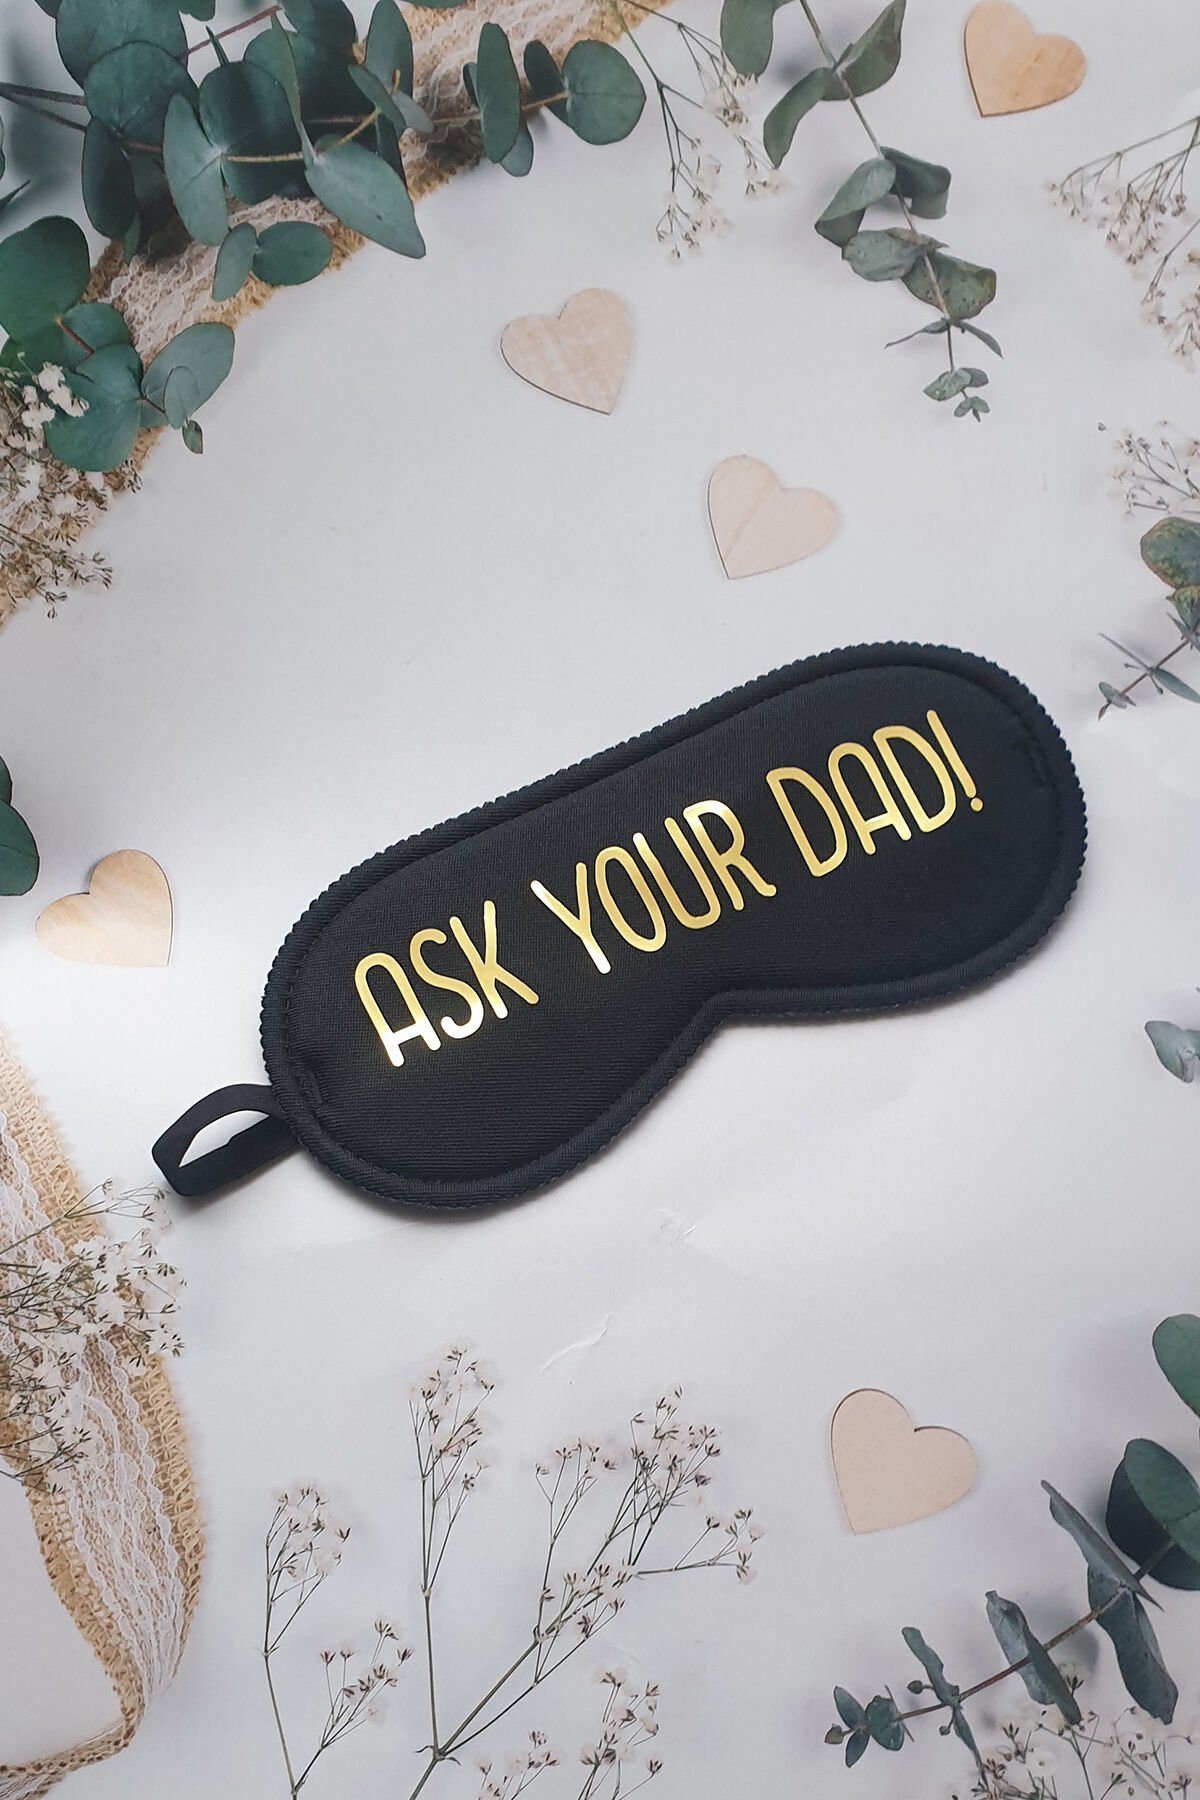 Ask Your Dad! Yazılı Uyku Bandı, Anneler için